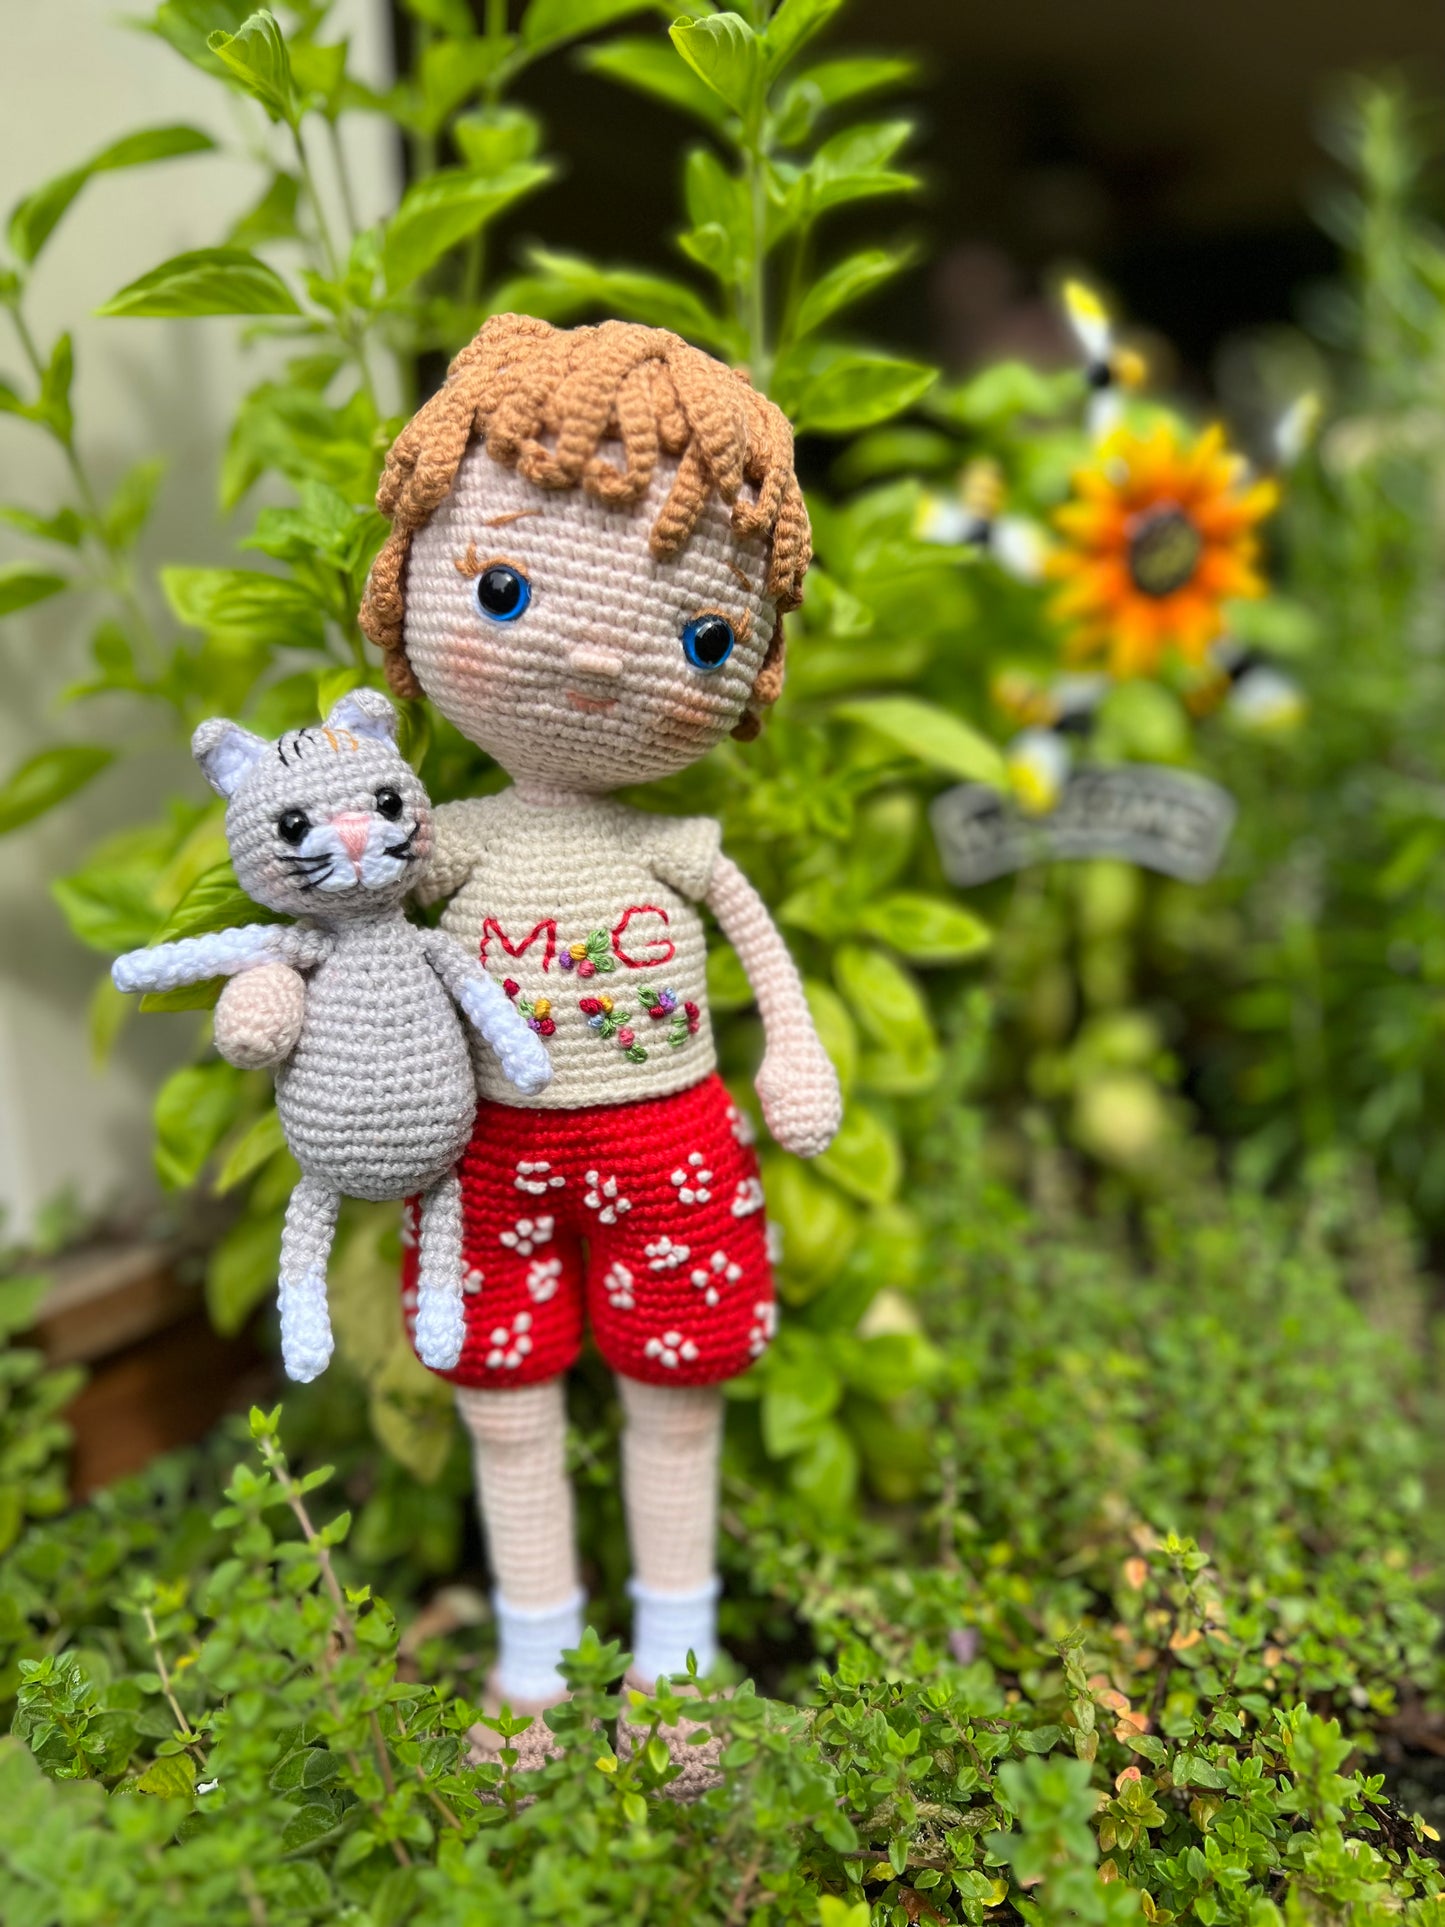 Personalized Crochet Doll, Custom Crochet Doll, Personalized Plush Doll, Custom Plush Doll